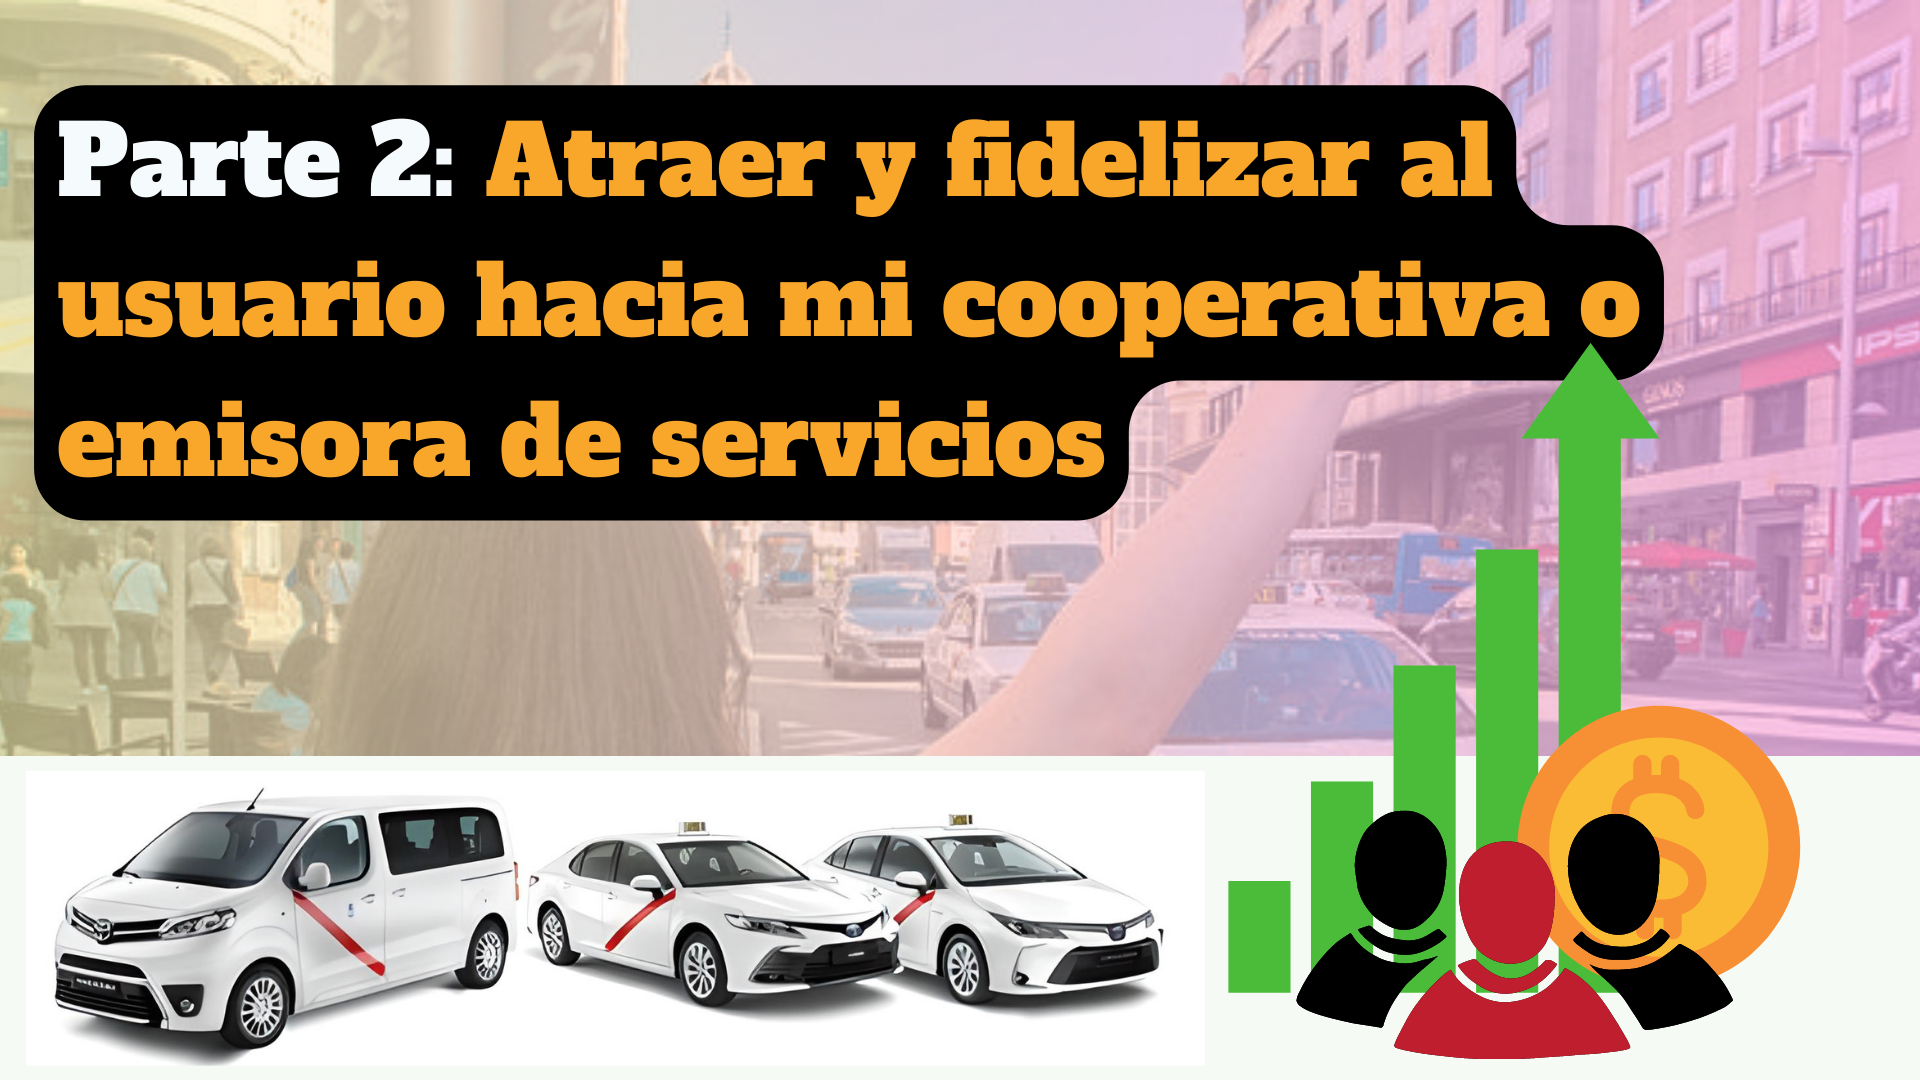 PARTE 2 – Atraer y fidelizar clientes hacia mi cooperativa o emisora de servicios de taxi